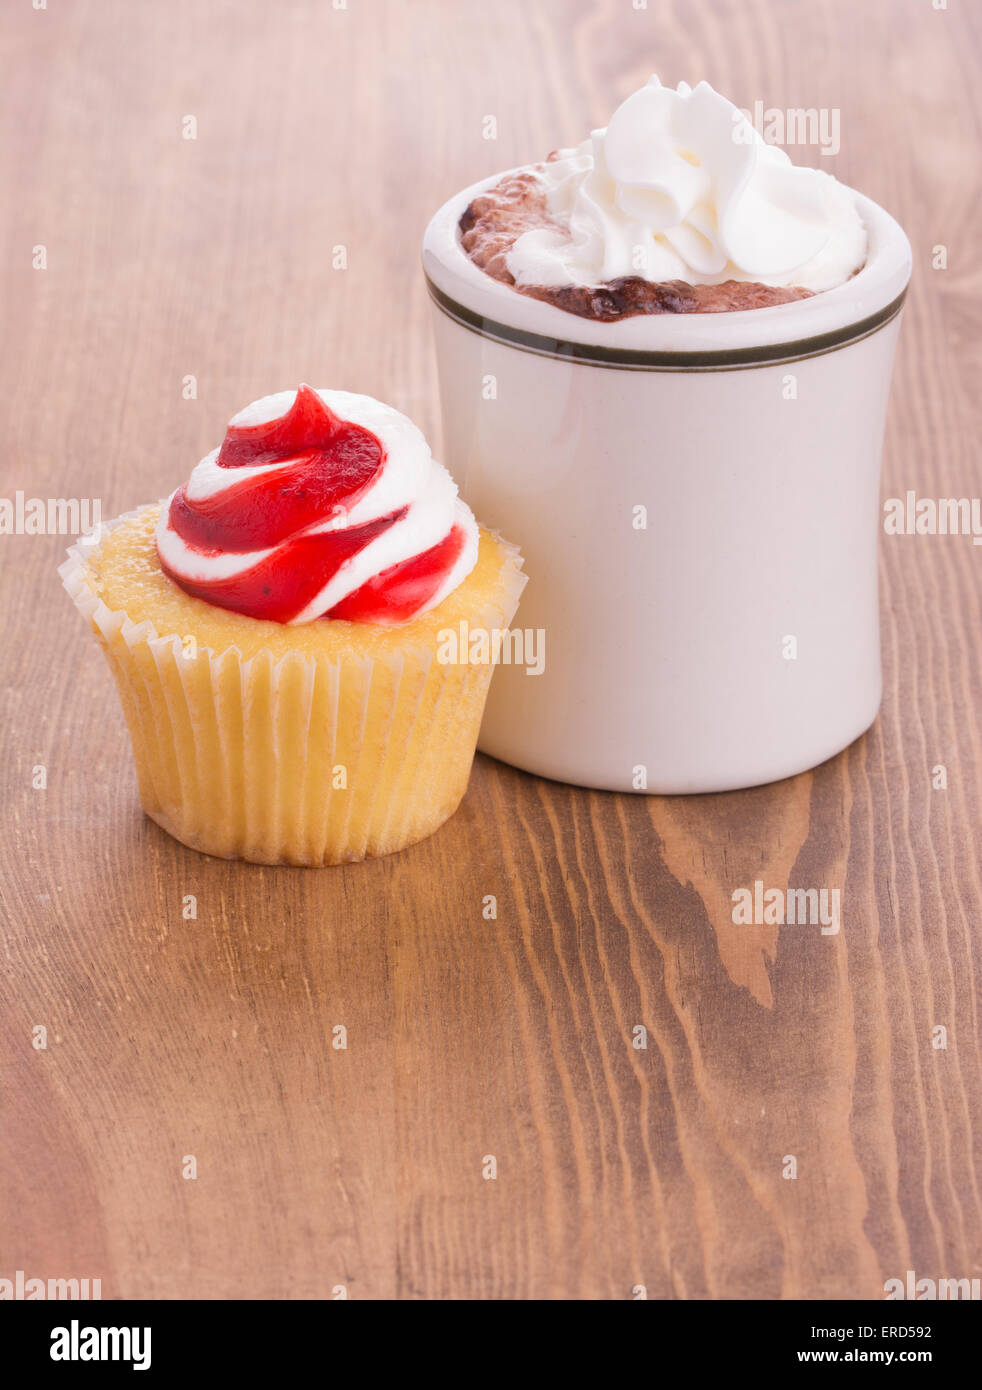 Tortina di fragole con una tazza di cioccolata calda sul legno scuro piano portapaziente - Anniversario o San Valentino per trattare una persona cara Foto Stock